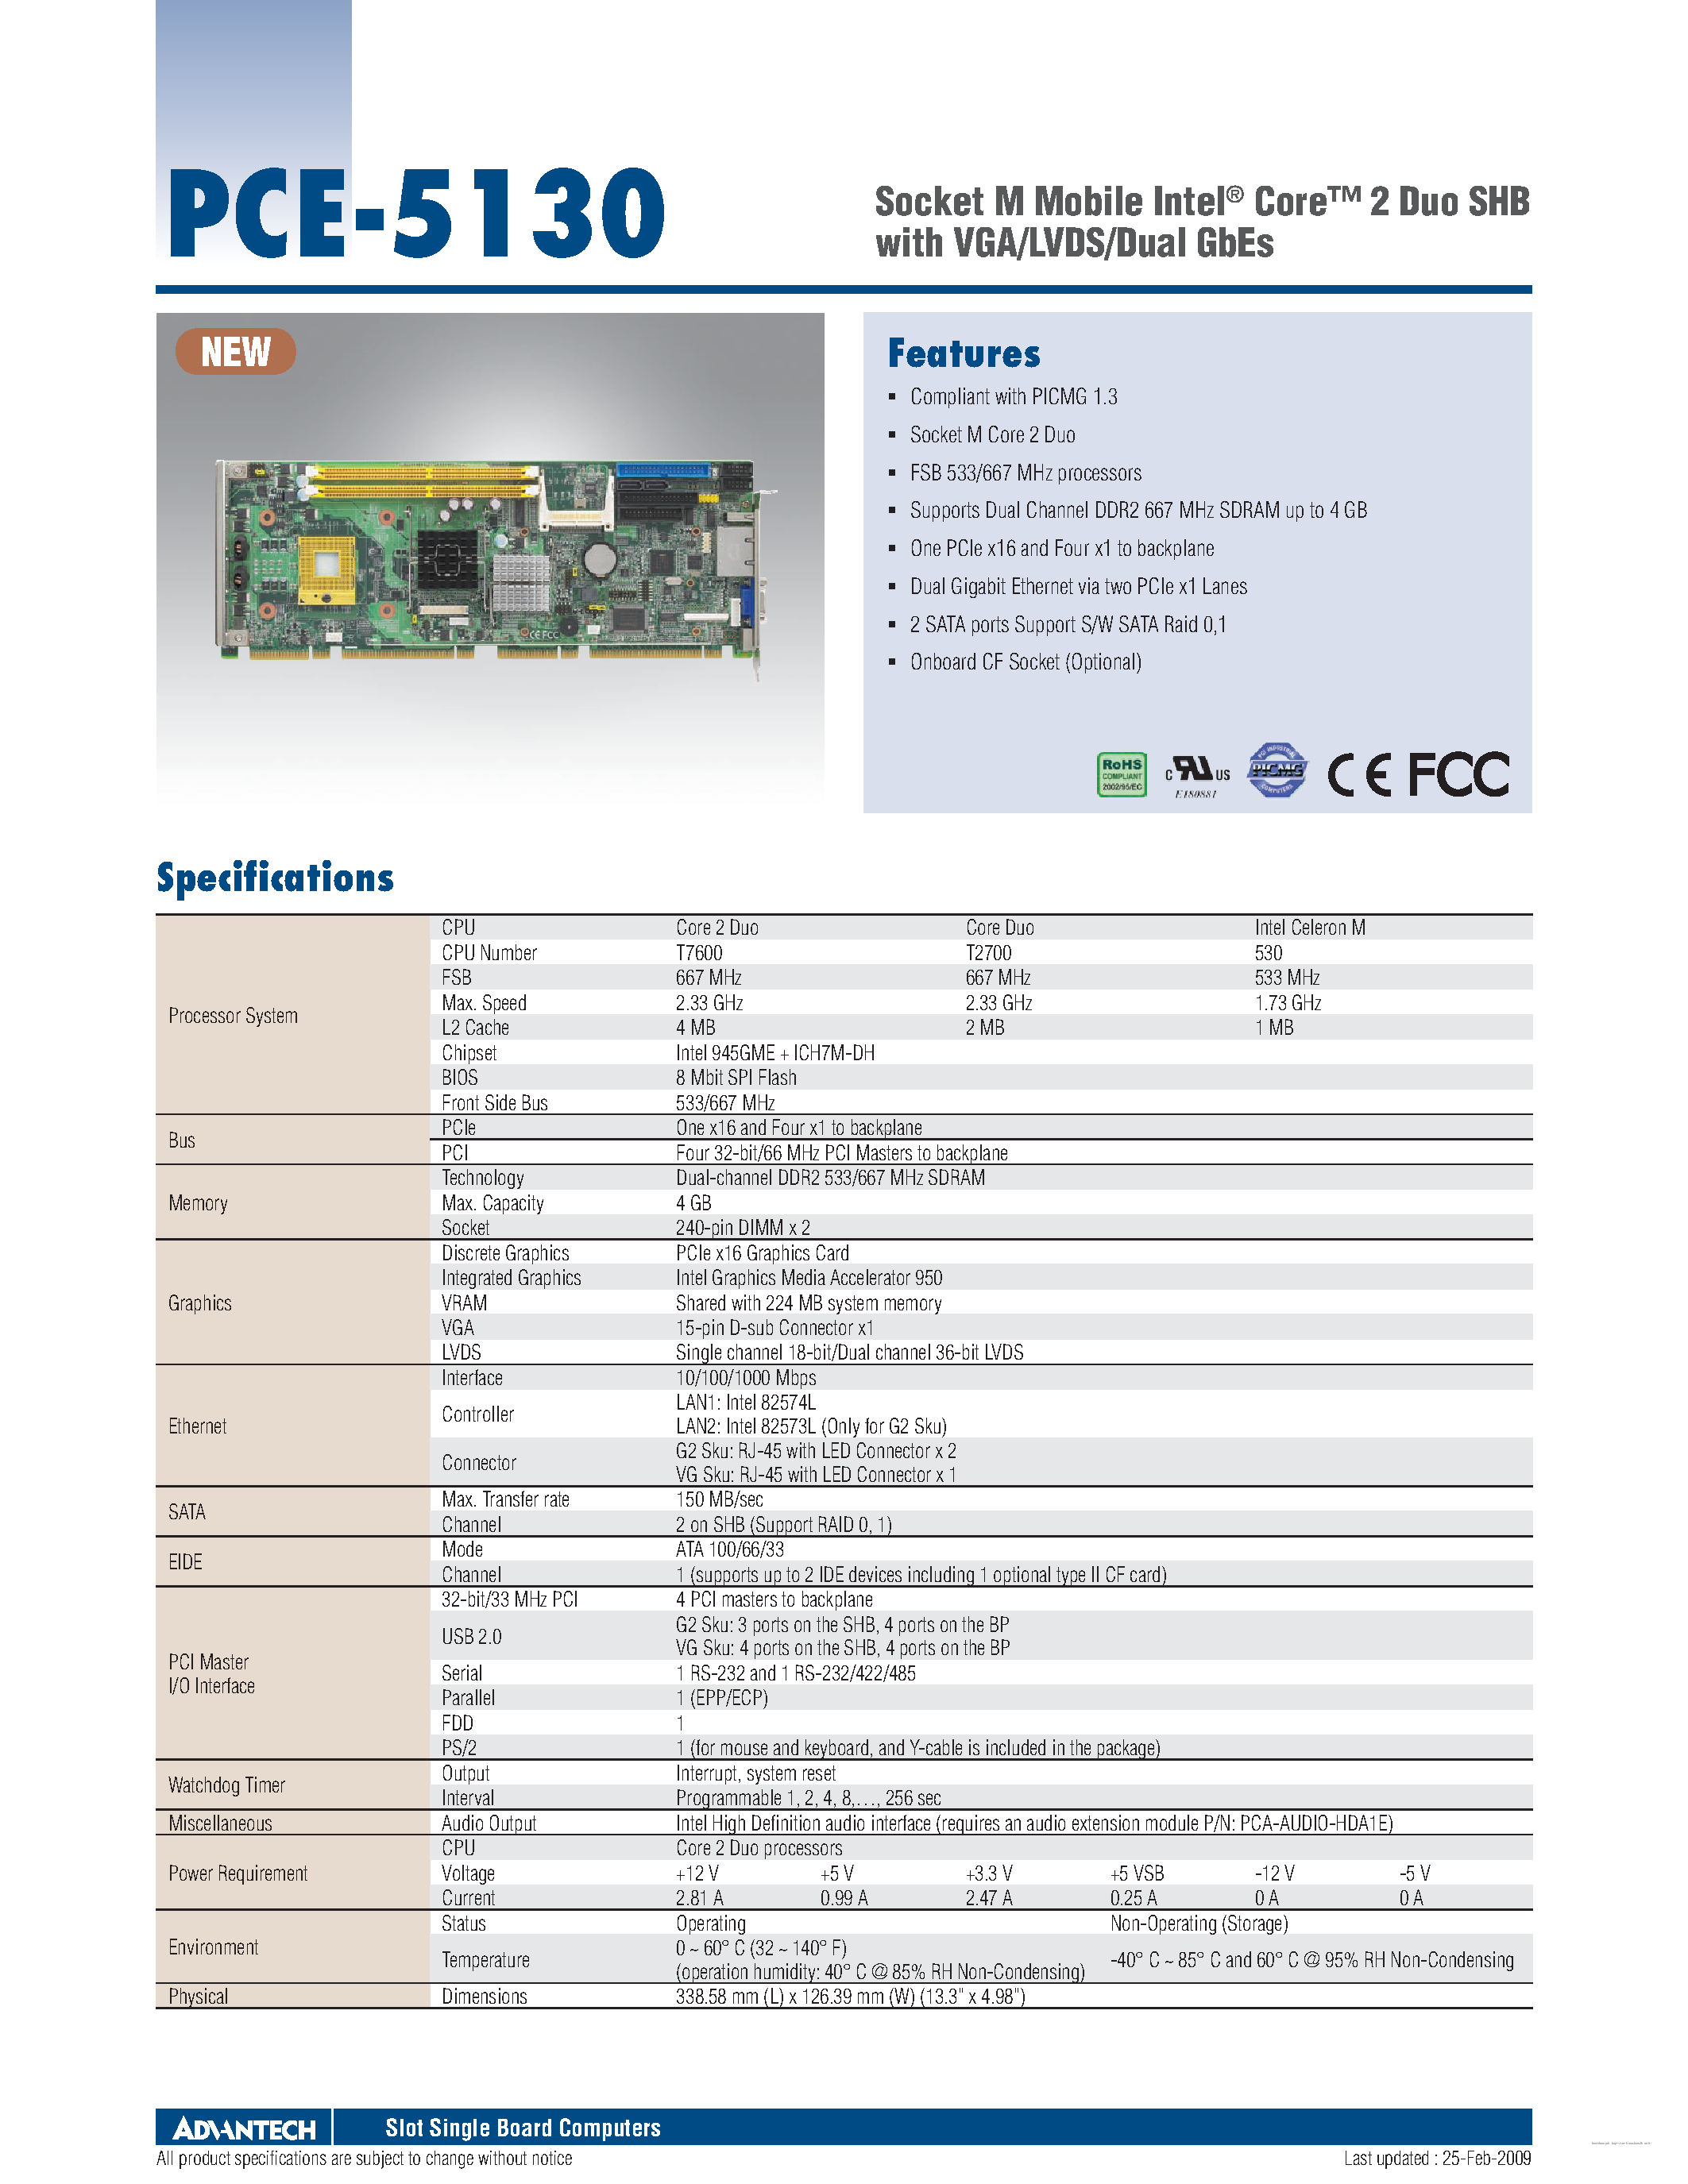 Даташит PCE-5130 - Socket M Mobile Intel Core страница 1